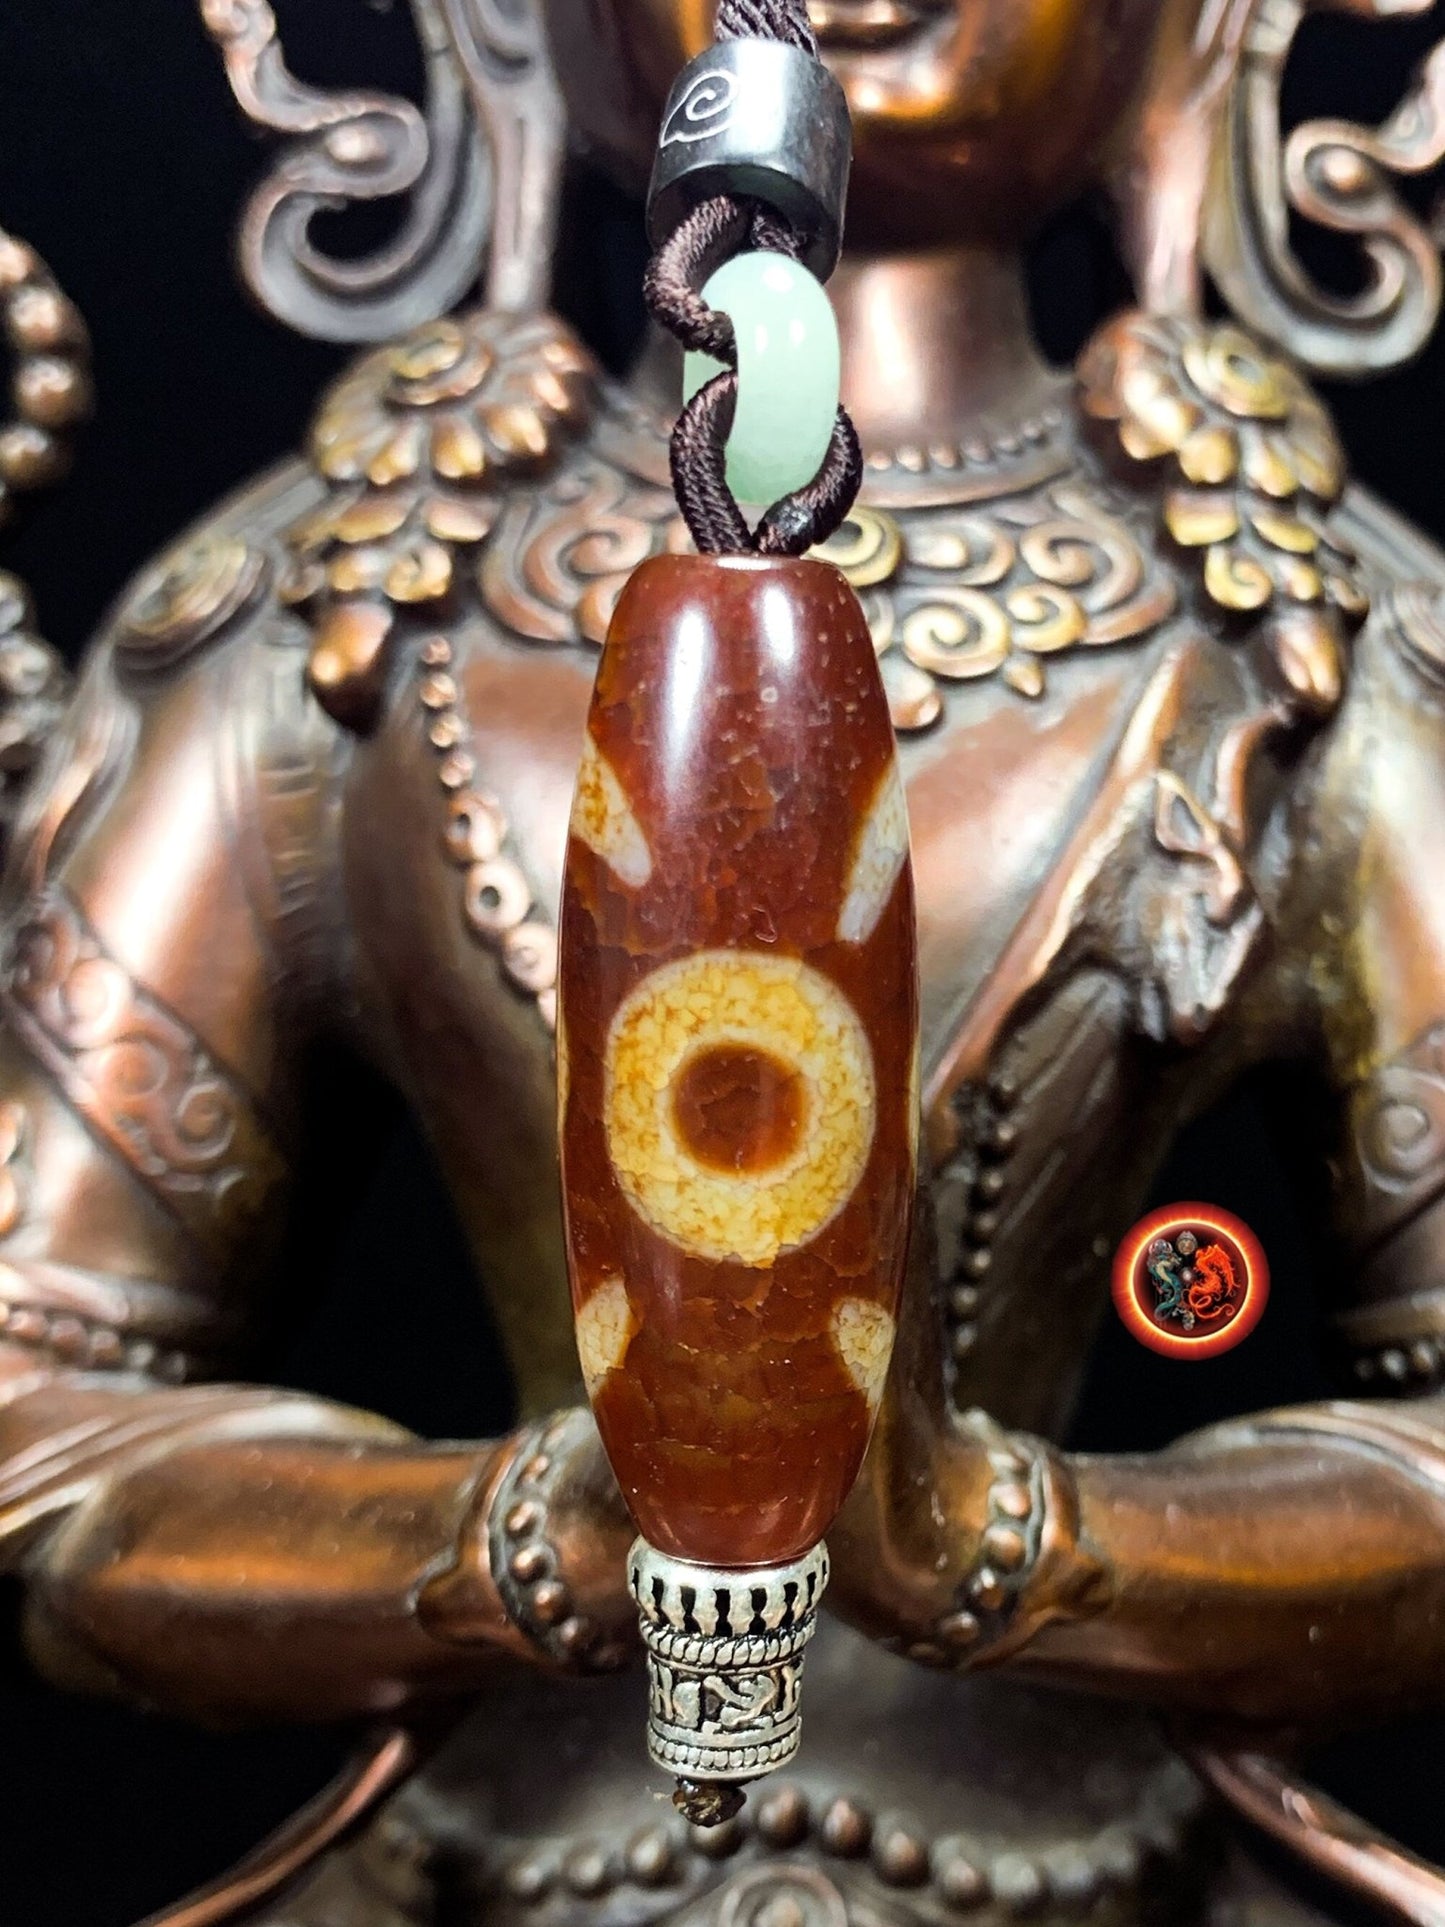 Authentique DZI, agate sacrée tibétaine à deux yeux "stabilité et équilibre". Cordon agrémenté de jade néphrite - obsidian dragon